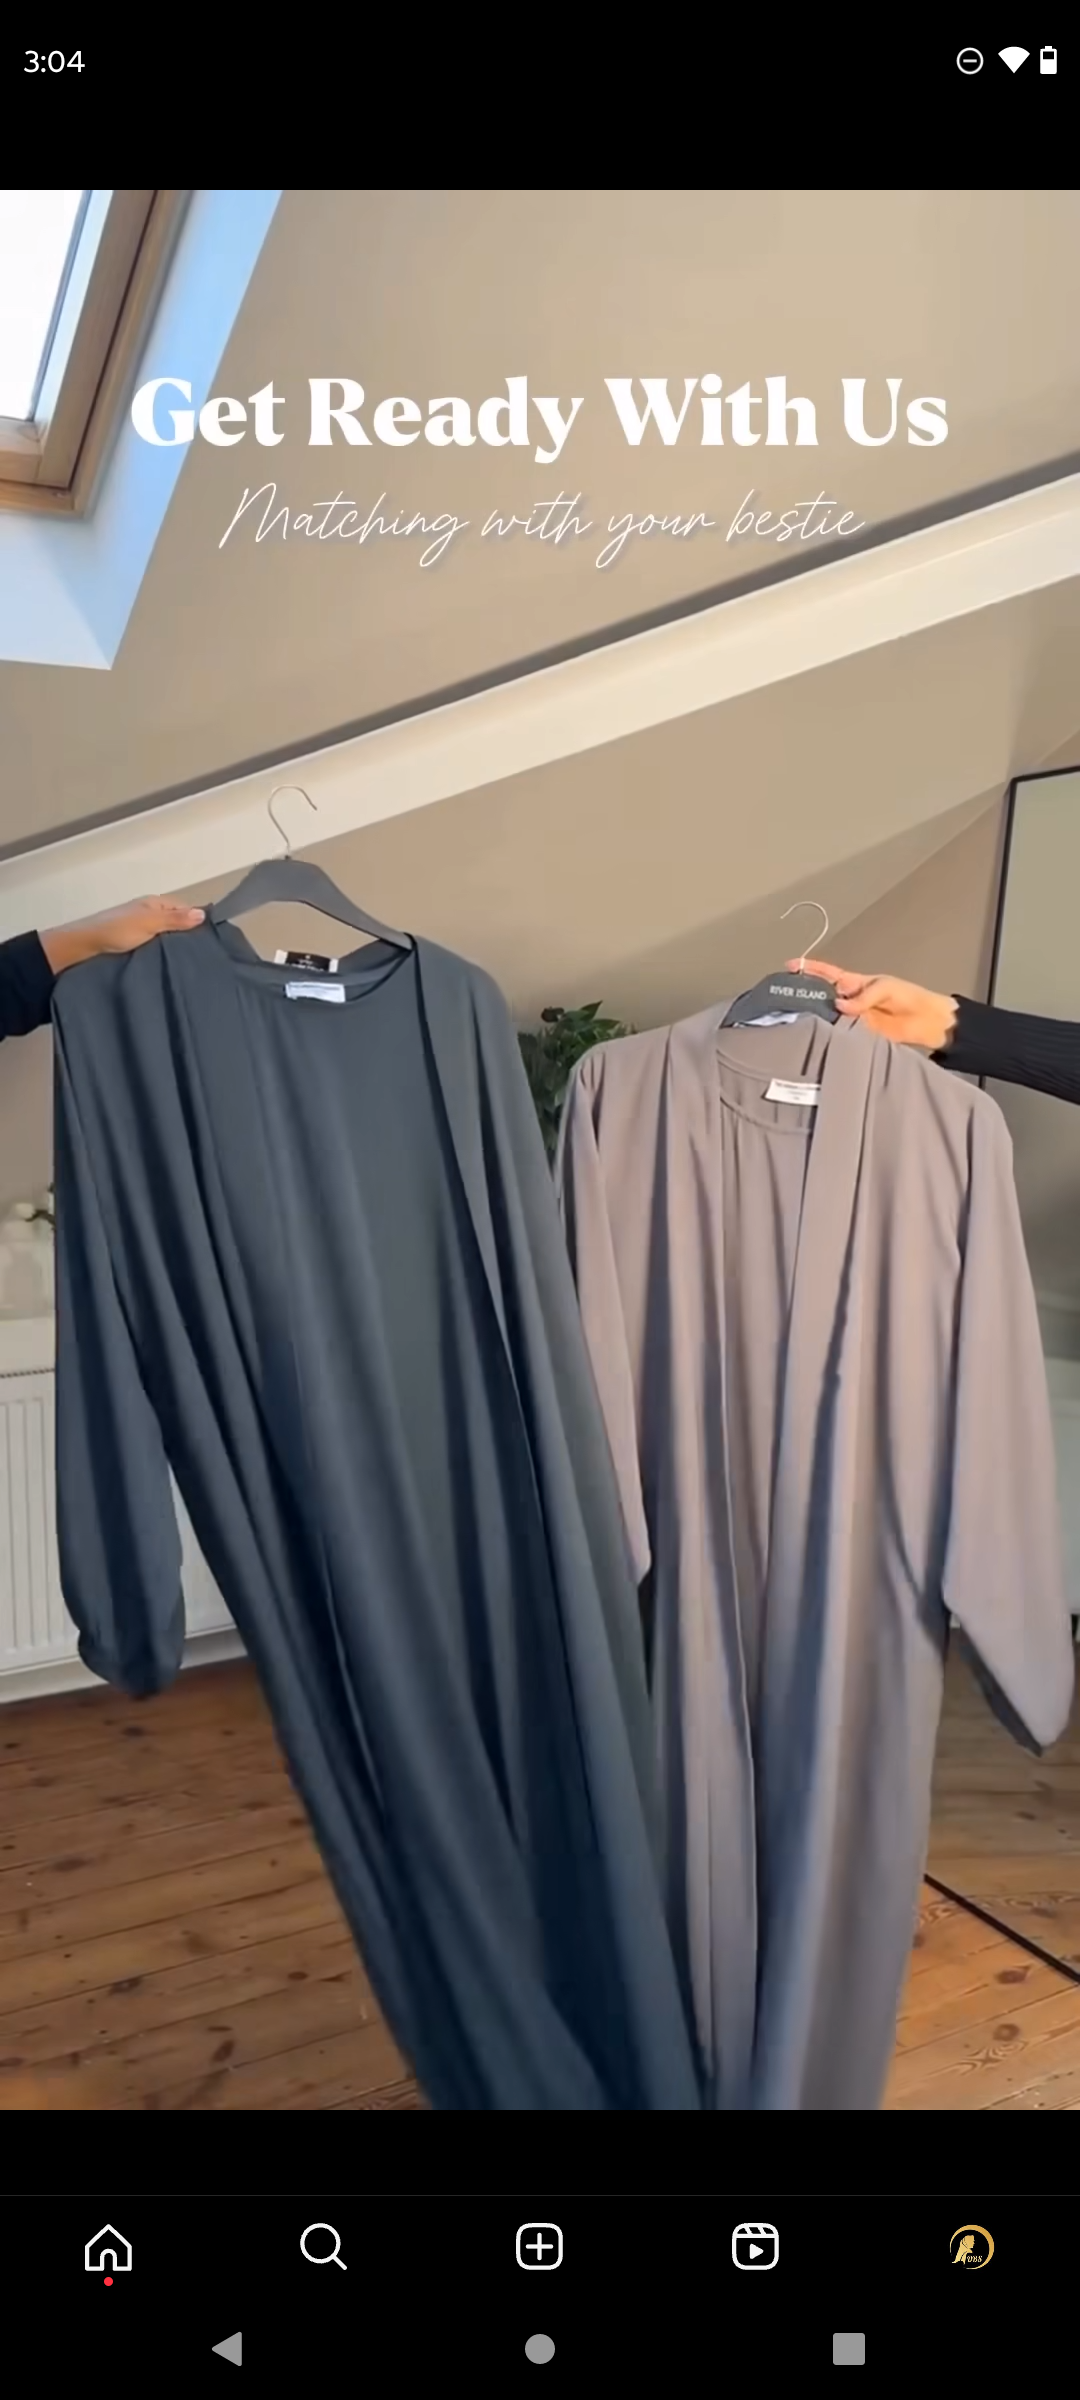 Al Miftah Abaya Shrug Style Abaya Double Layered Shrug Abaya